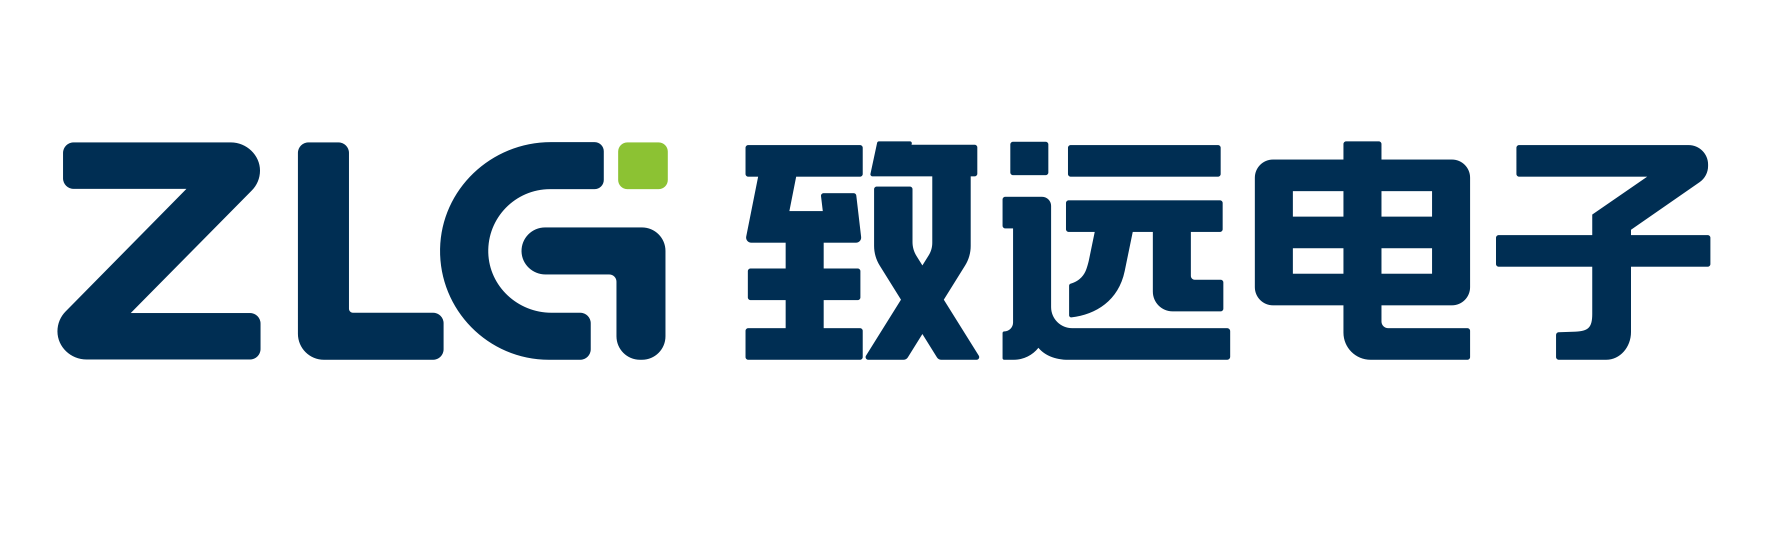 Zlg    logo guangzhou zhiyuan electronics co.  ltd